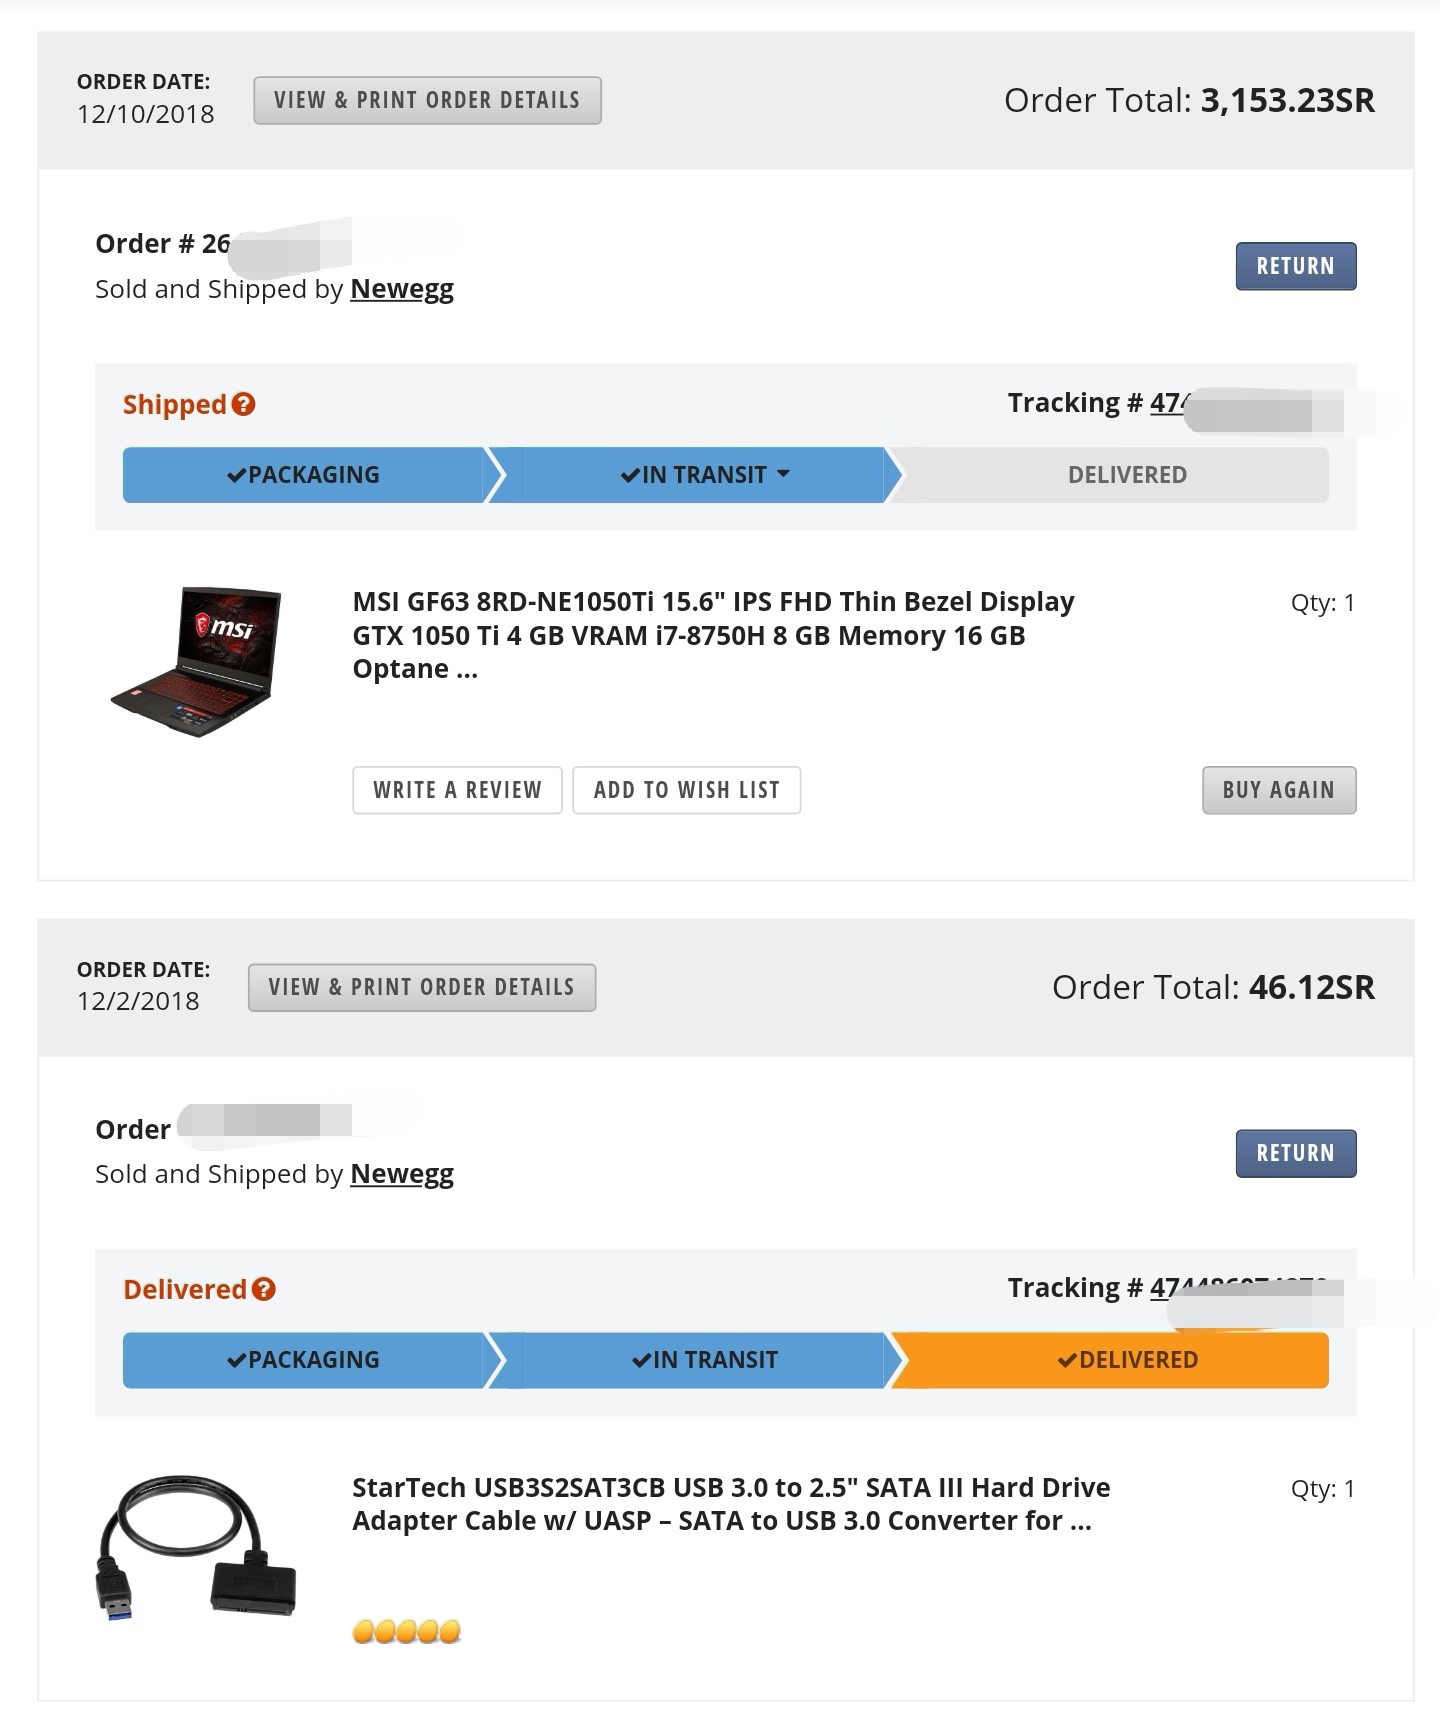 تجربة شراء جهاز لاب توب laptop من موقع التسوق الإلكتروني newegg1